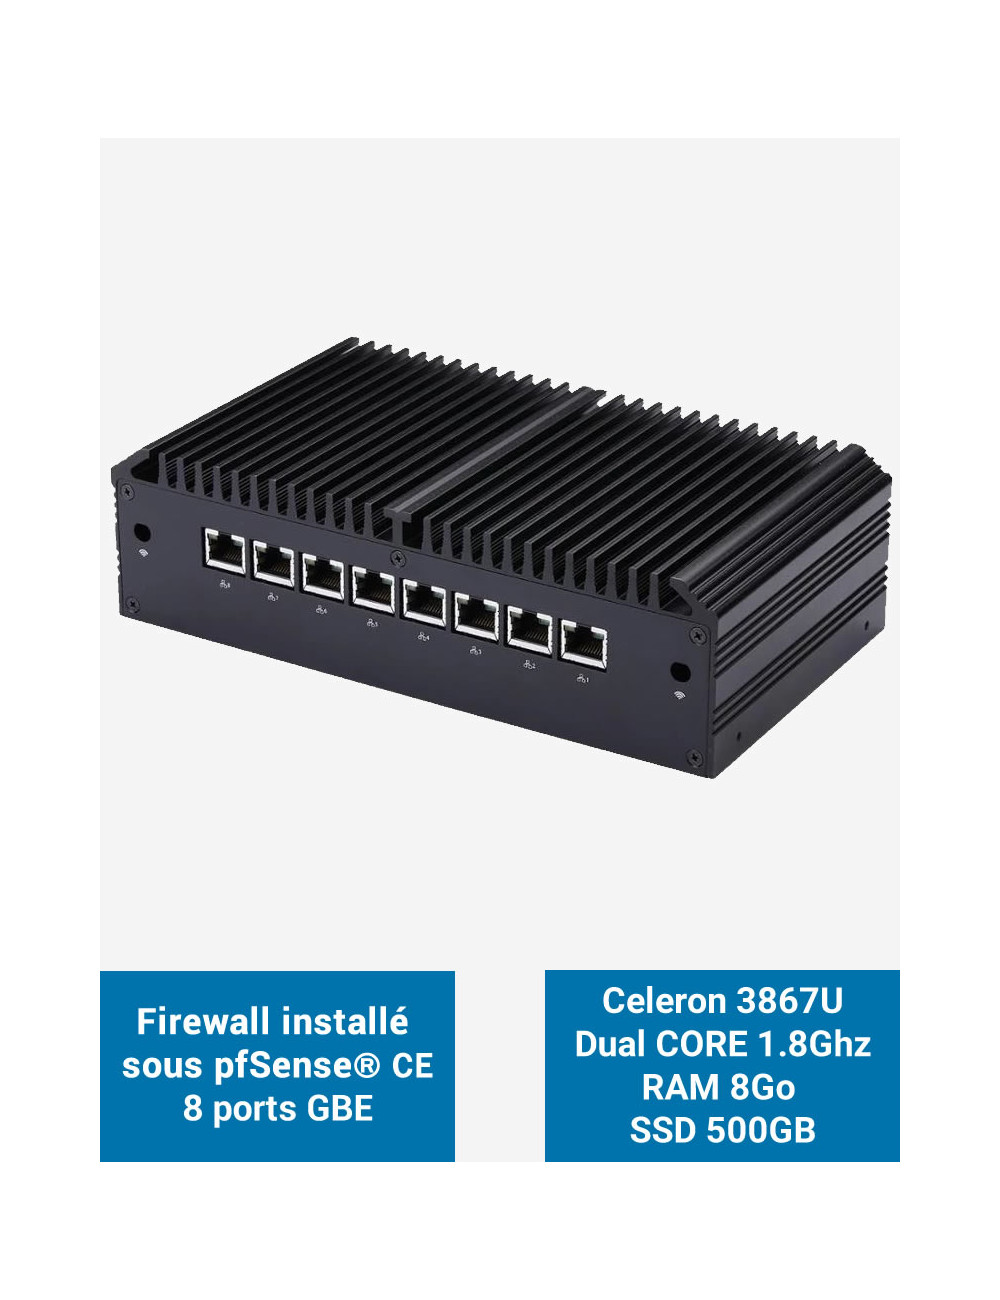 Firewall Q8x Celeron 3867U 8 ports GbE 8GB 500GB